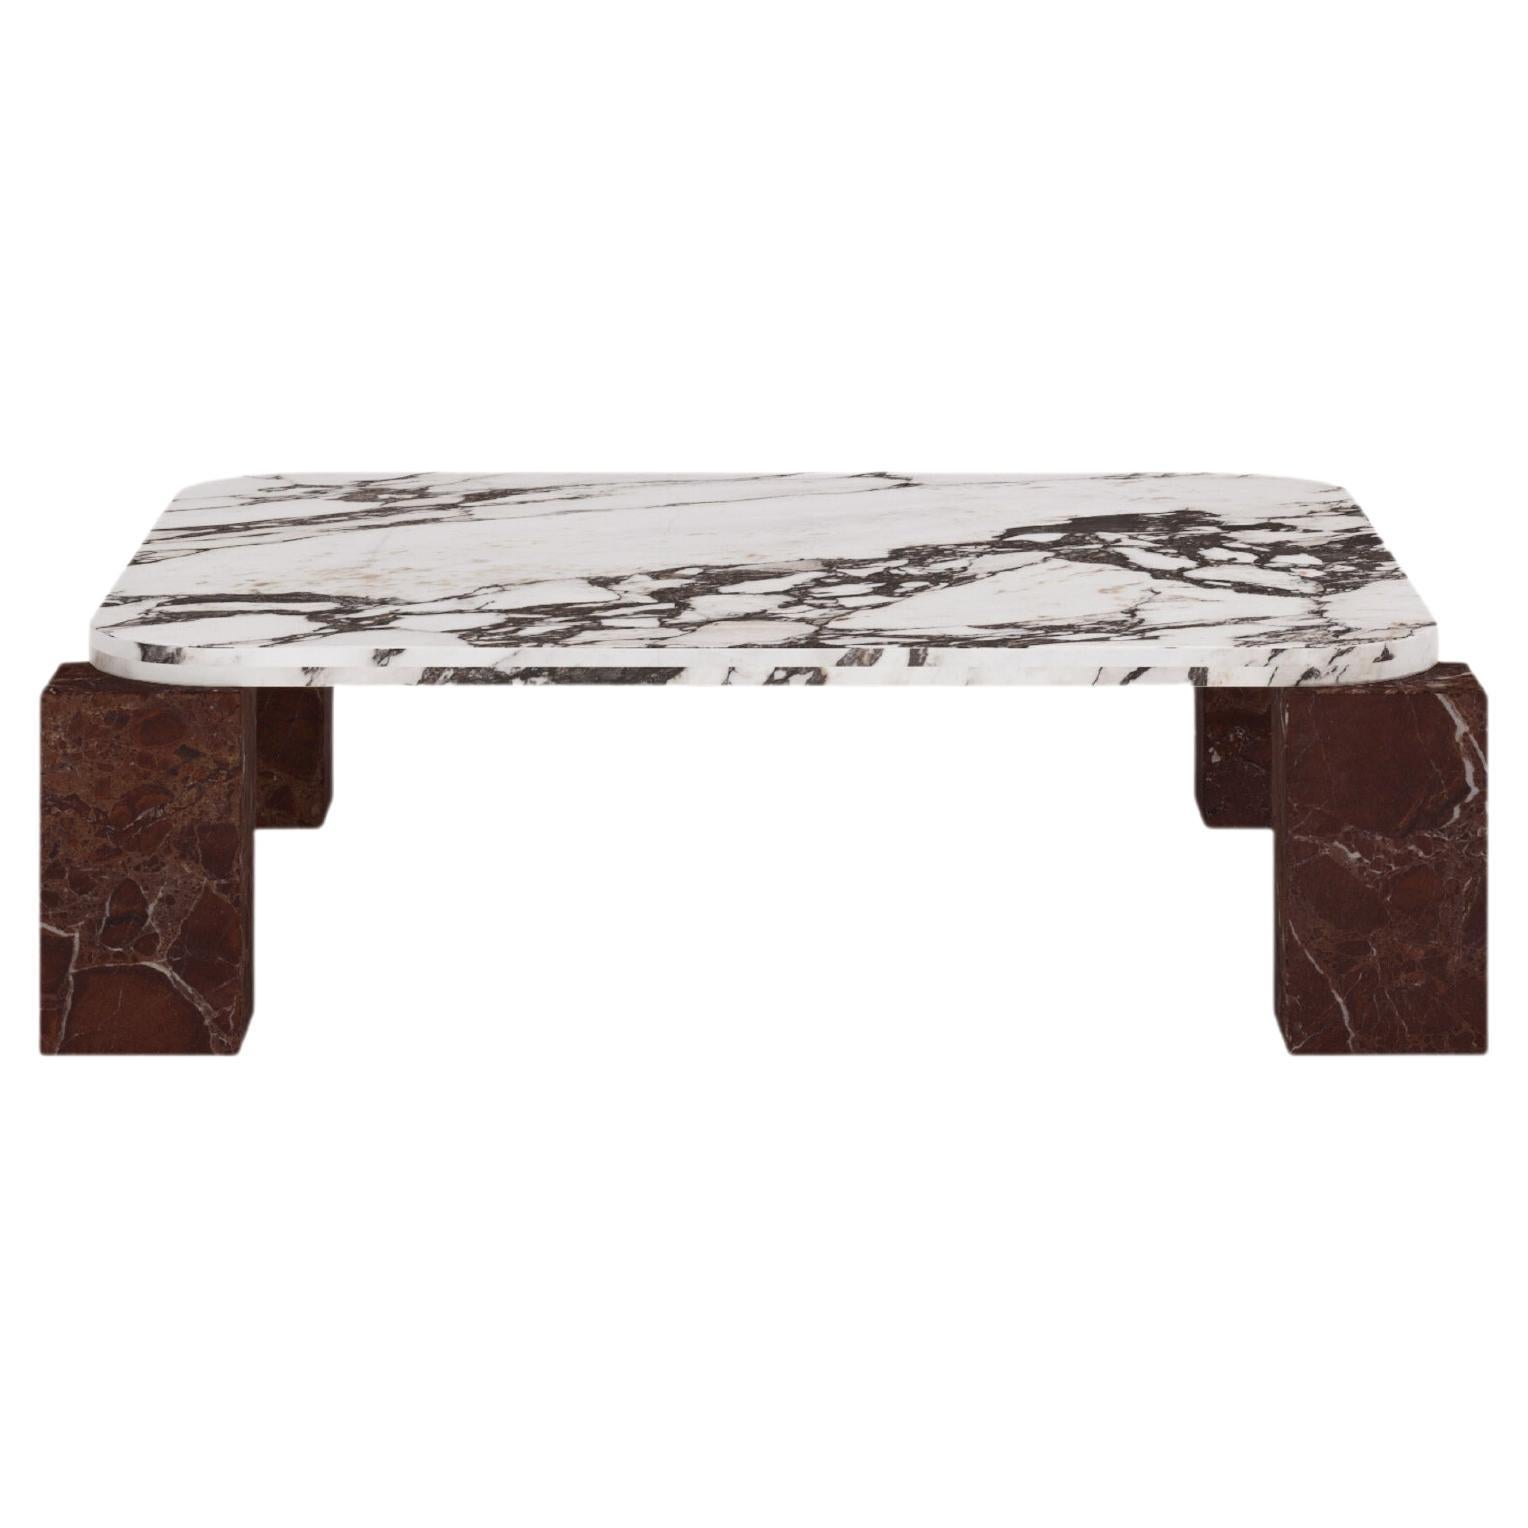 FORM(LA) Cubo Square Coffee Table 44”L x 44"W x 14”H Viola & Rosso Marble